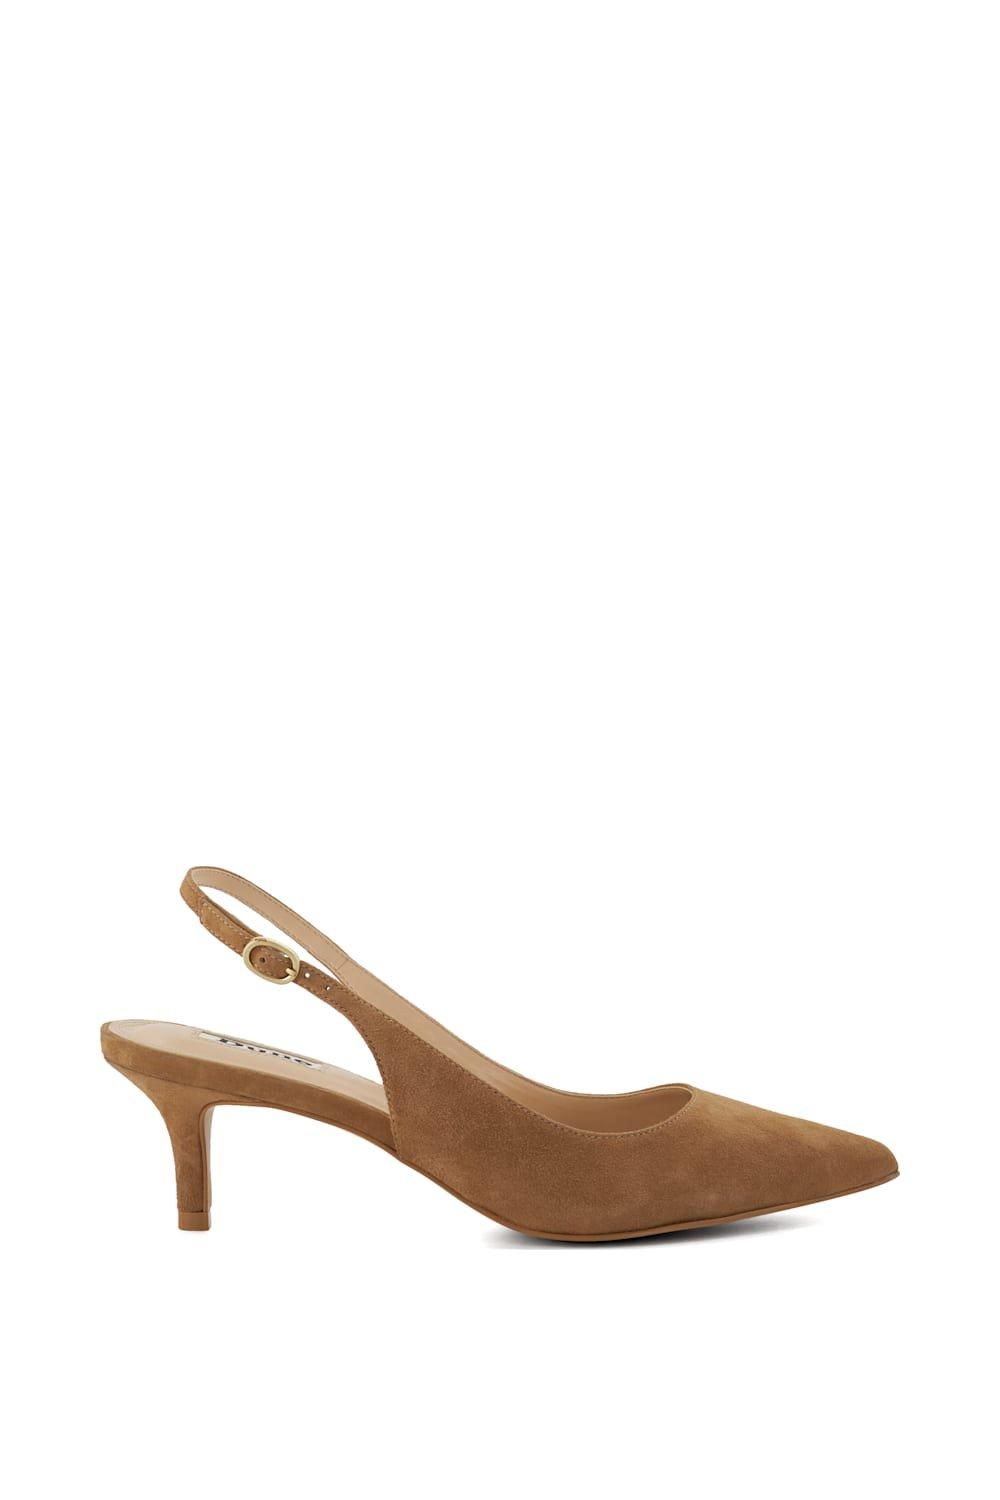 Кожаные туфли на каблуке 'Celini' с ремешками Dune London, бежевый широкие корты dollis с заостренным двухсекционным носком wallis черный